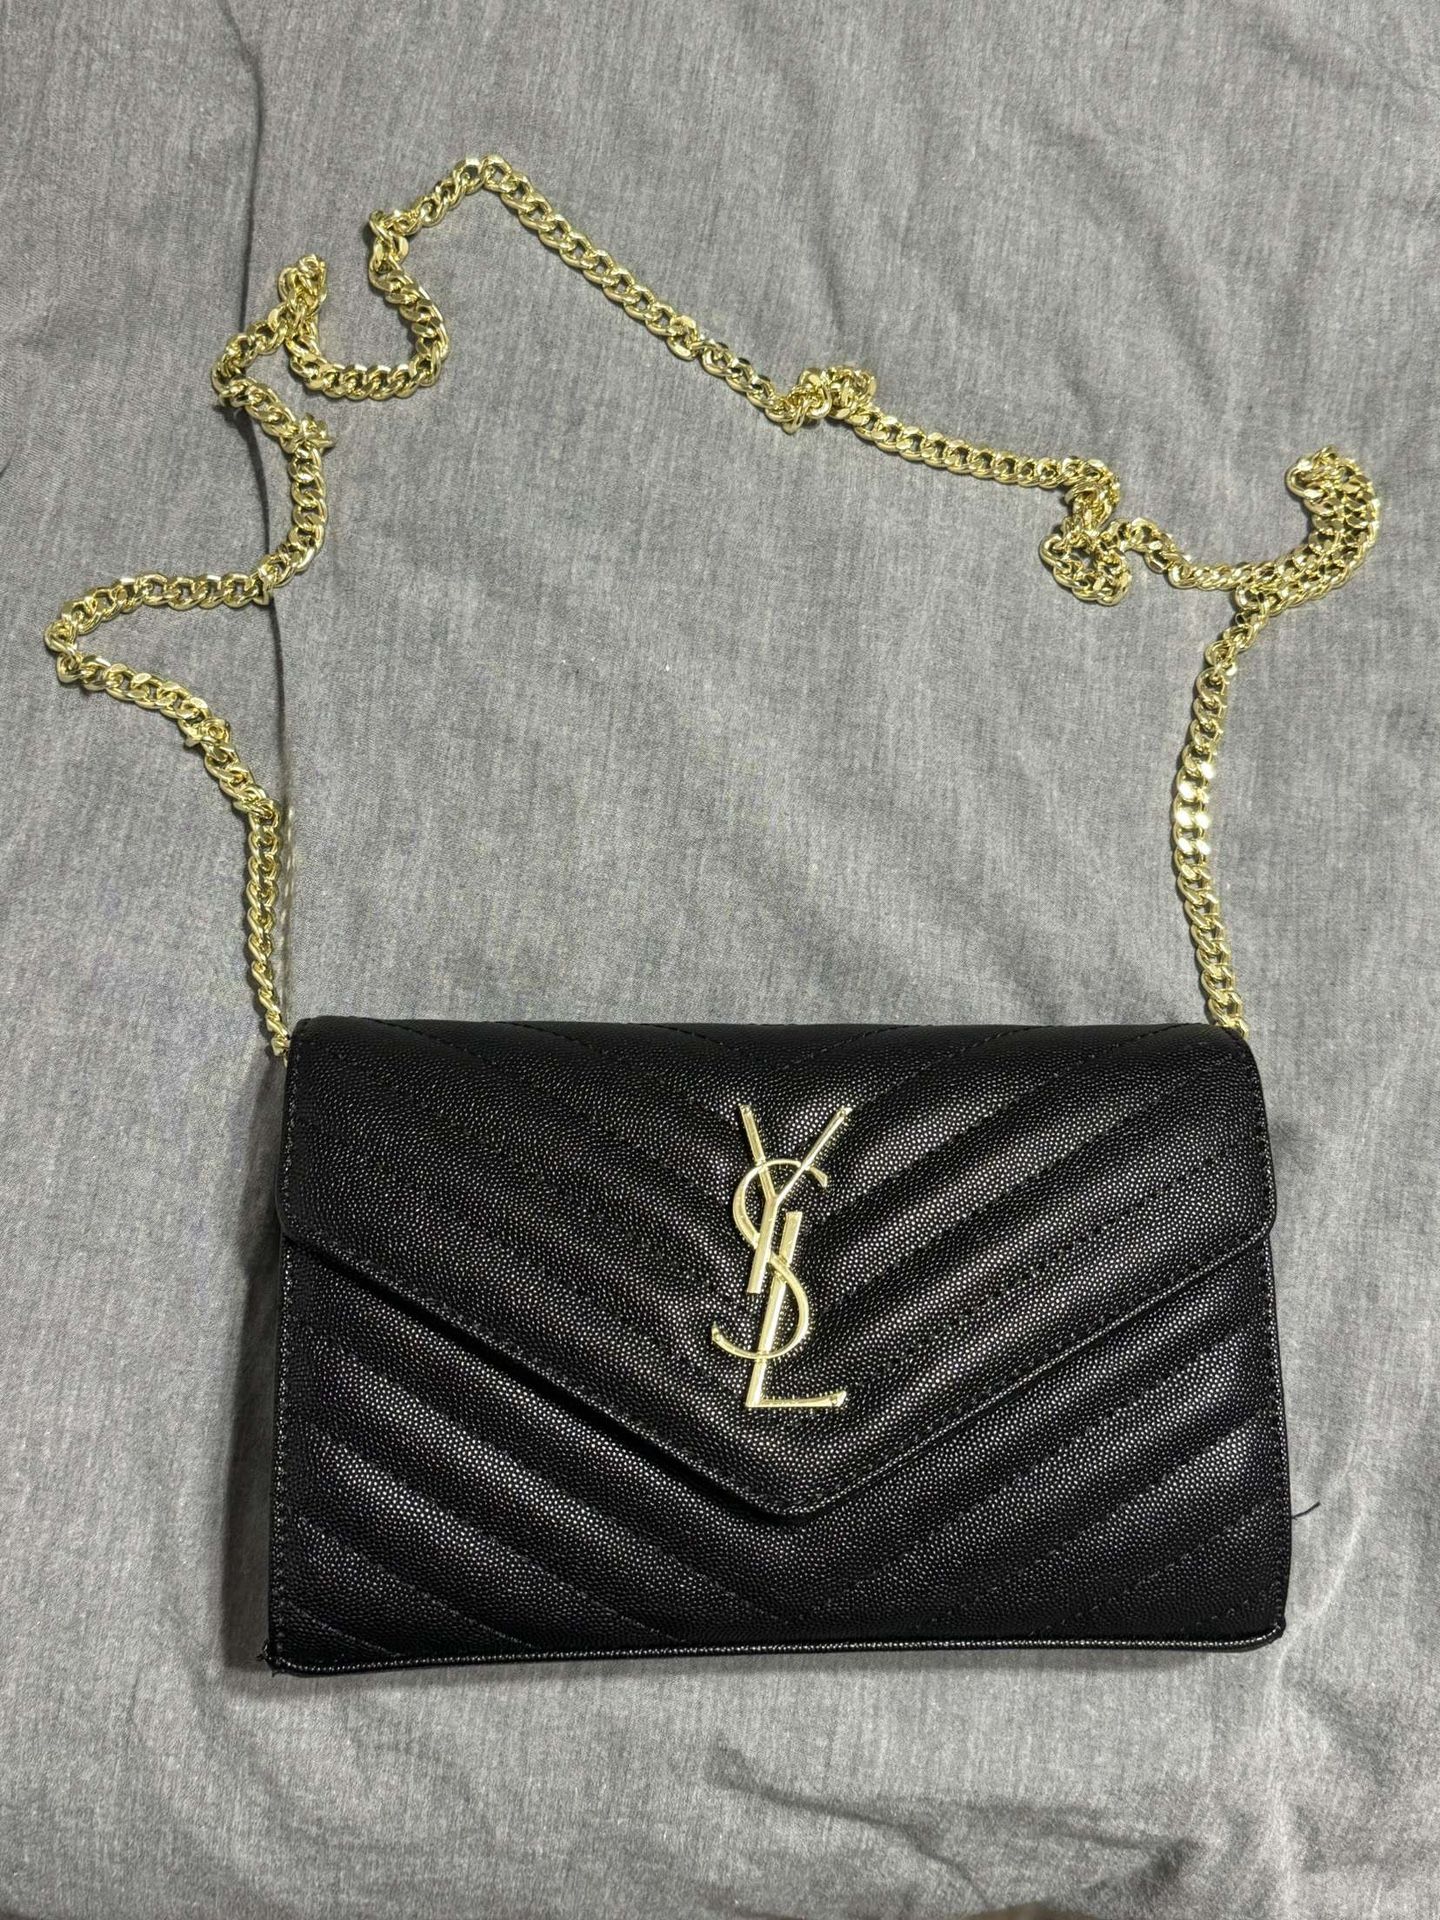 Yves Saint Laurent Women Handbag